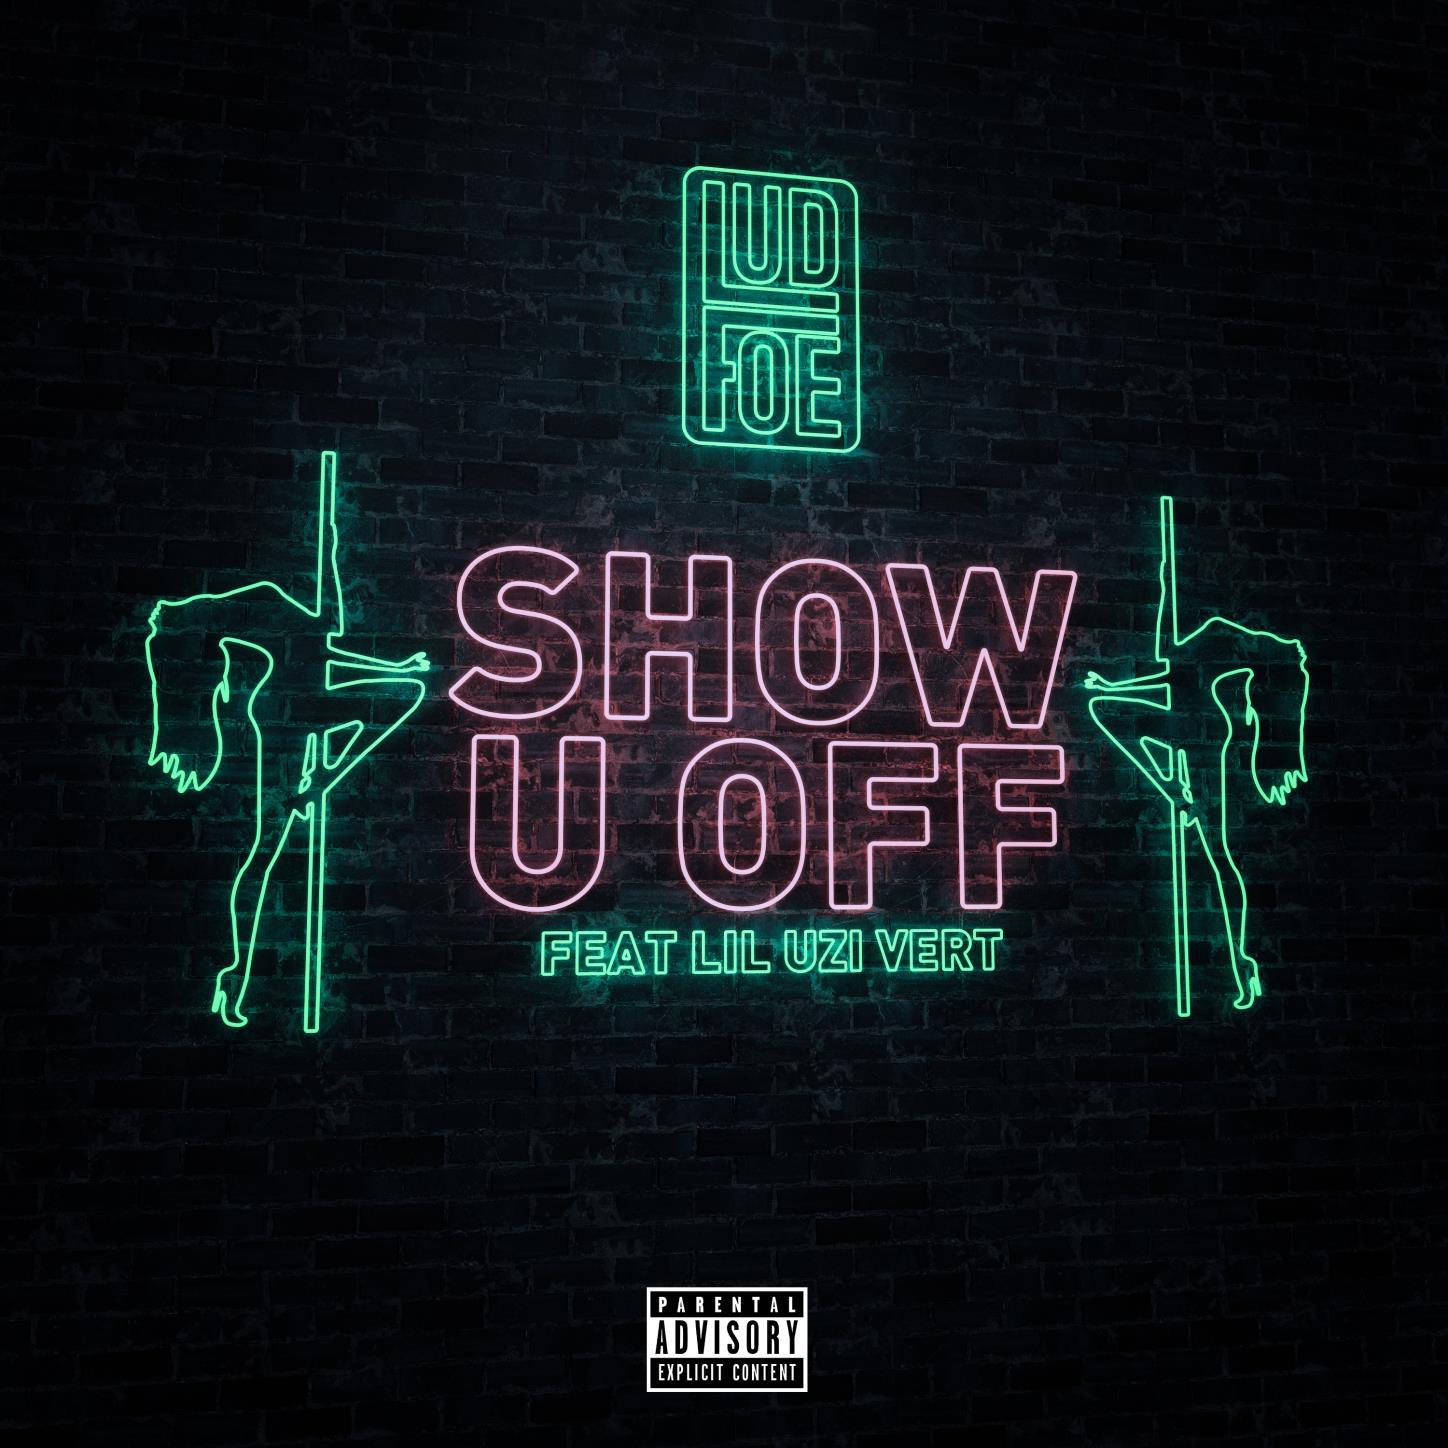 Show U Off